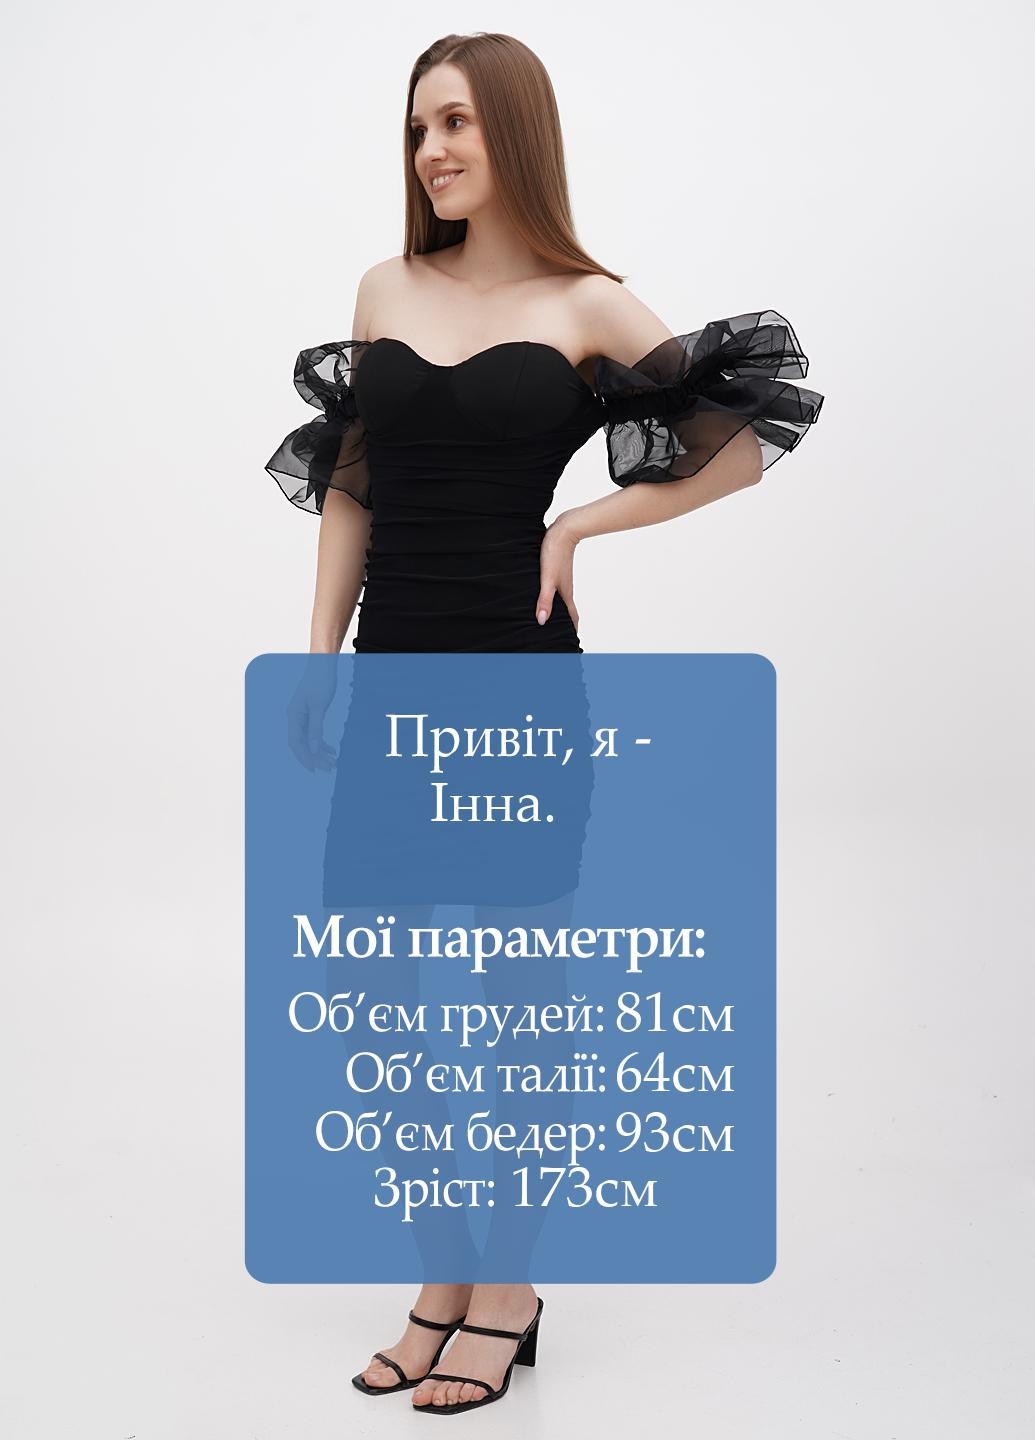 Черное коктейльное платье с открытыми плечами No Brand однотонное